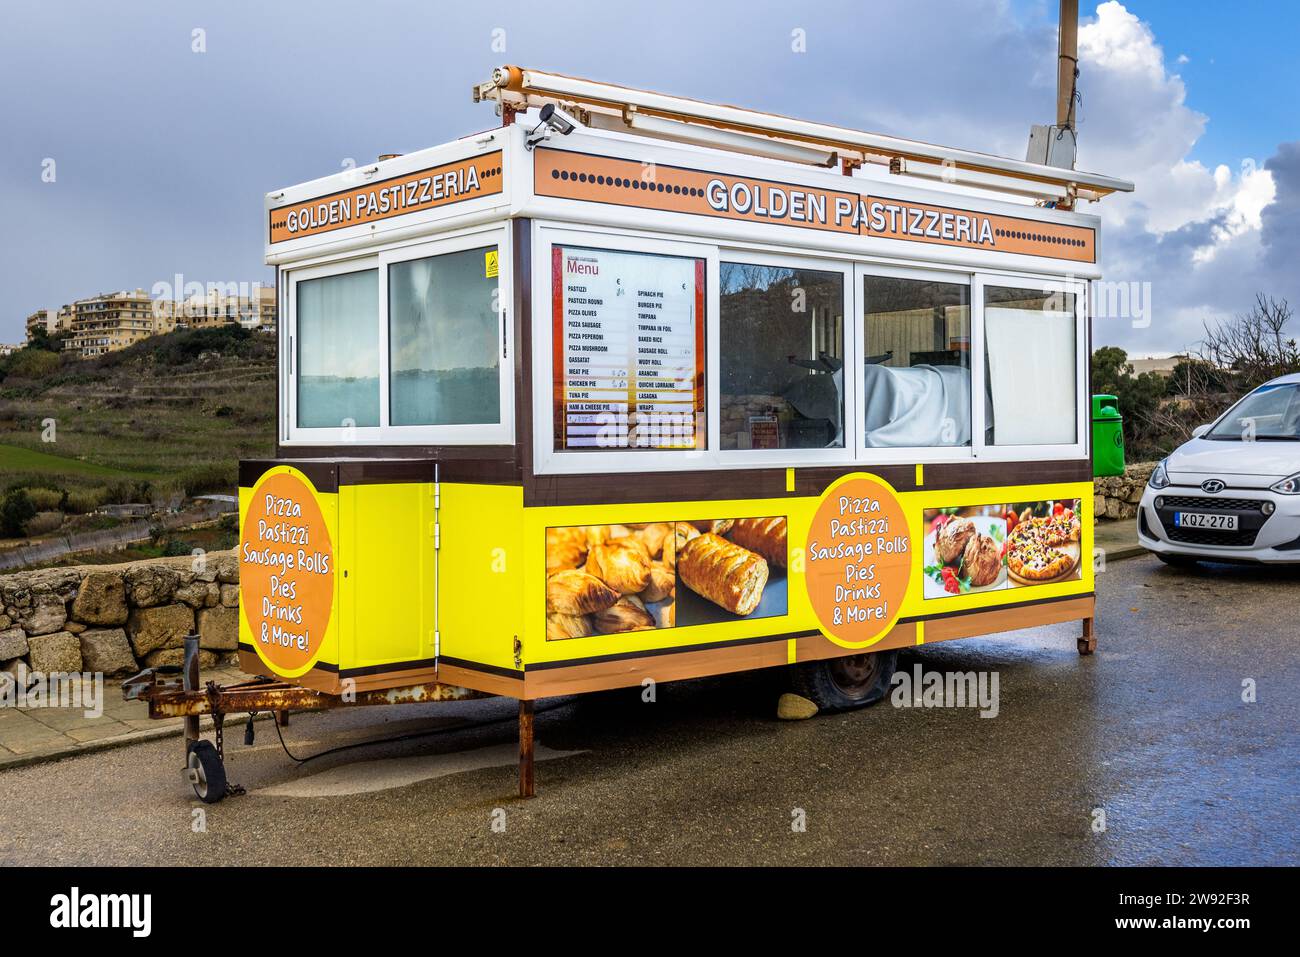 Chiosco mobile che offre pastizzi, una specialità dell'arcipelago maltese a Xaghra, Malta Foto Stock